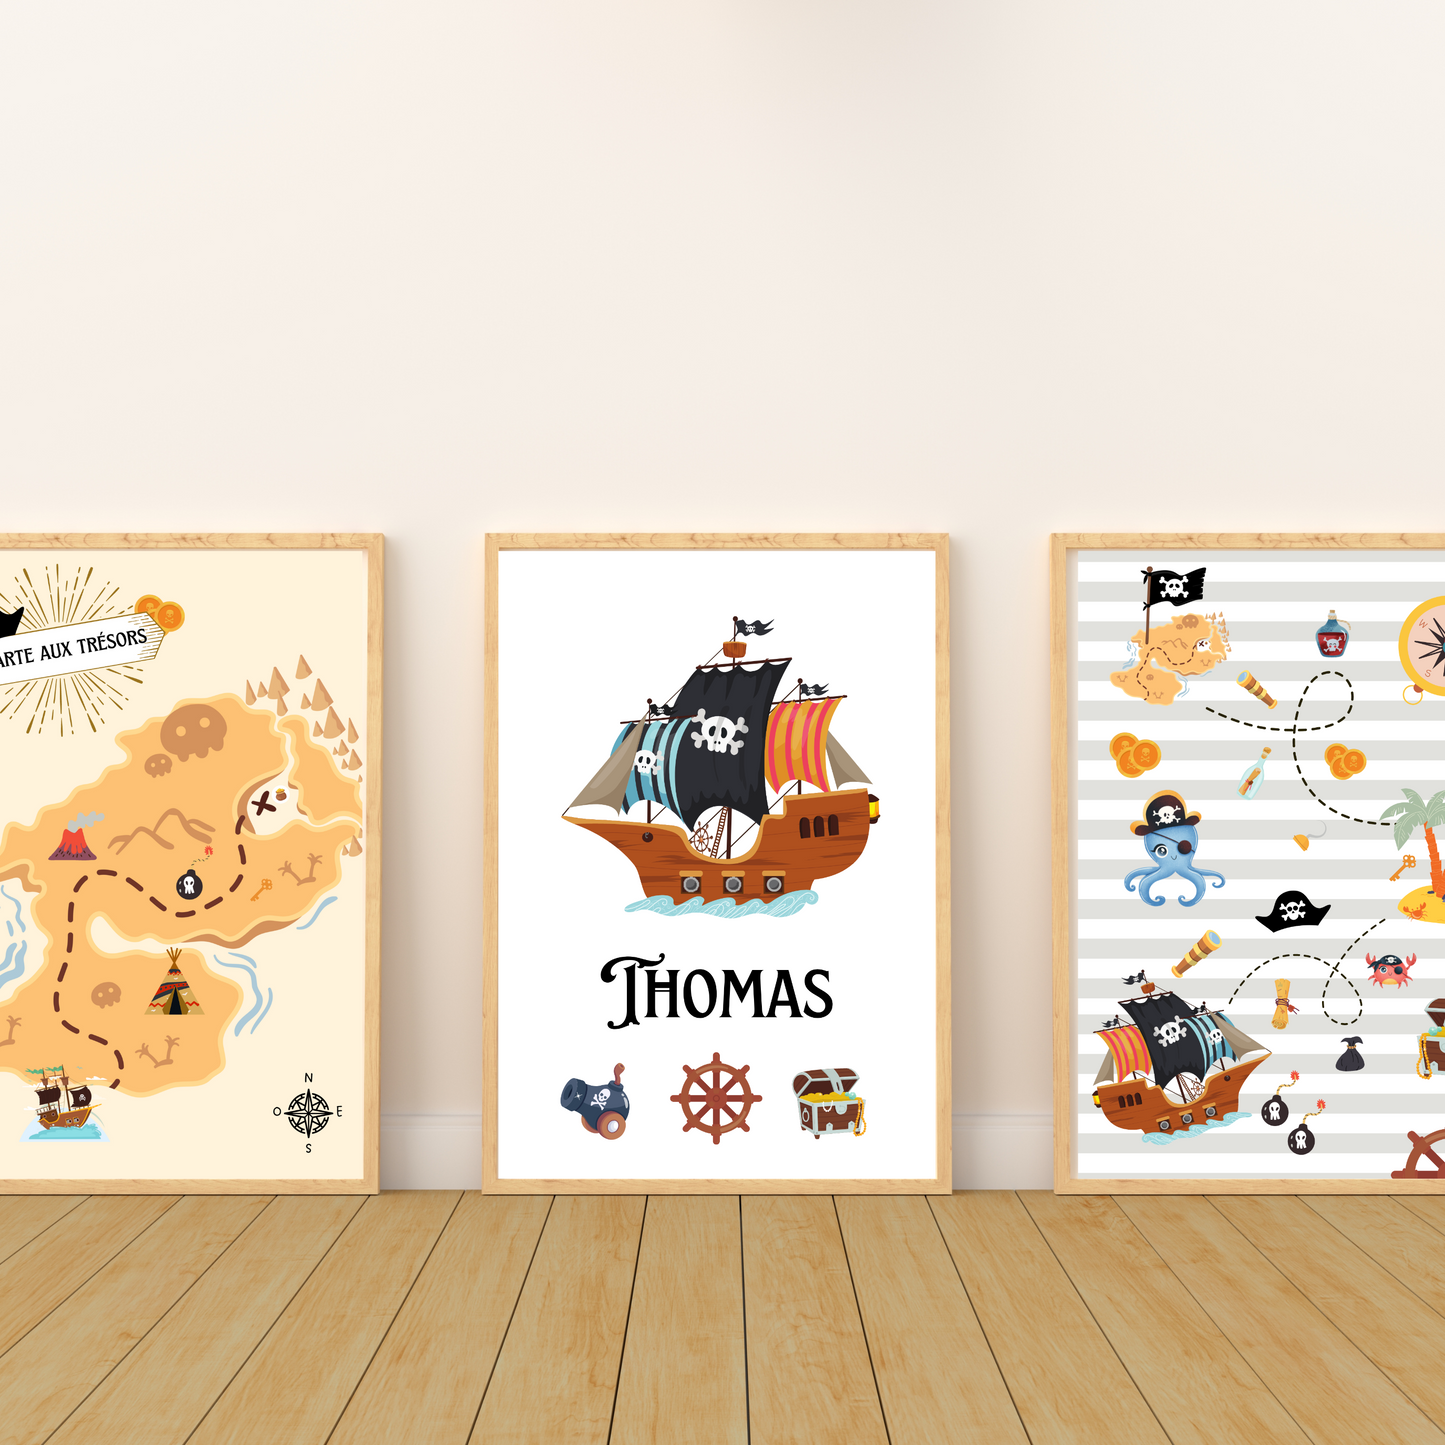 Affiches pirate enfant - trio pirate carte aux trésors prénom  - Décoration pirate chambre de bébé par Le Temps des Paillettes